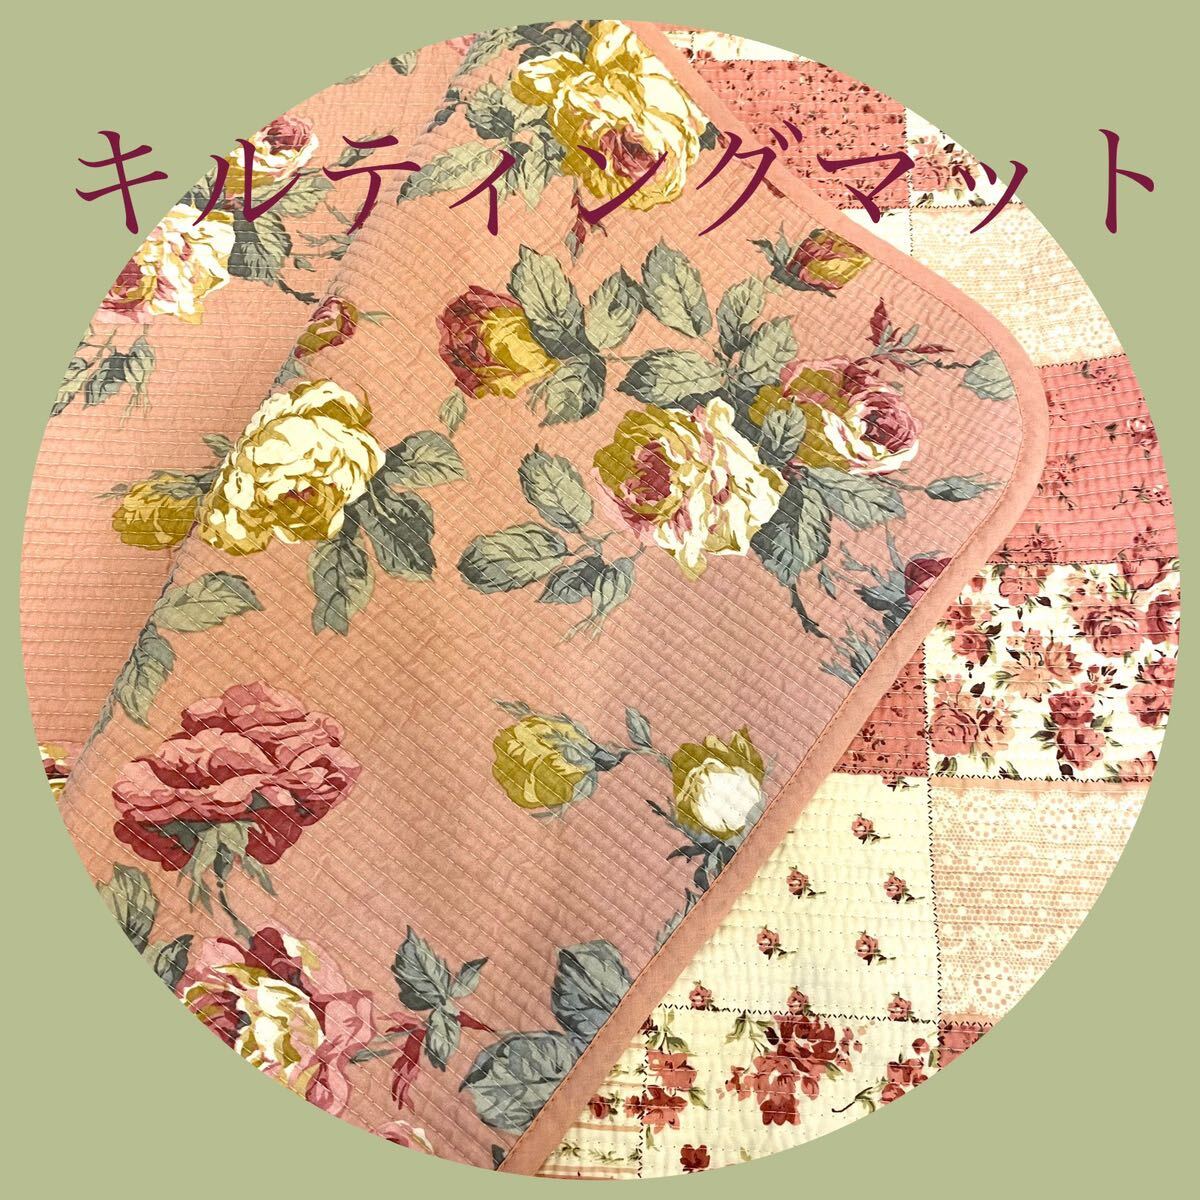 Цветочный рисунок стегающий коврик обратимый 50 × 136 см розовой шаблон крышка сиденья боковая коврик